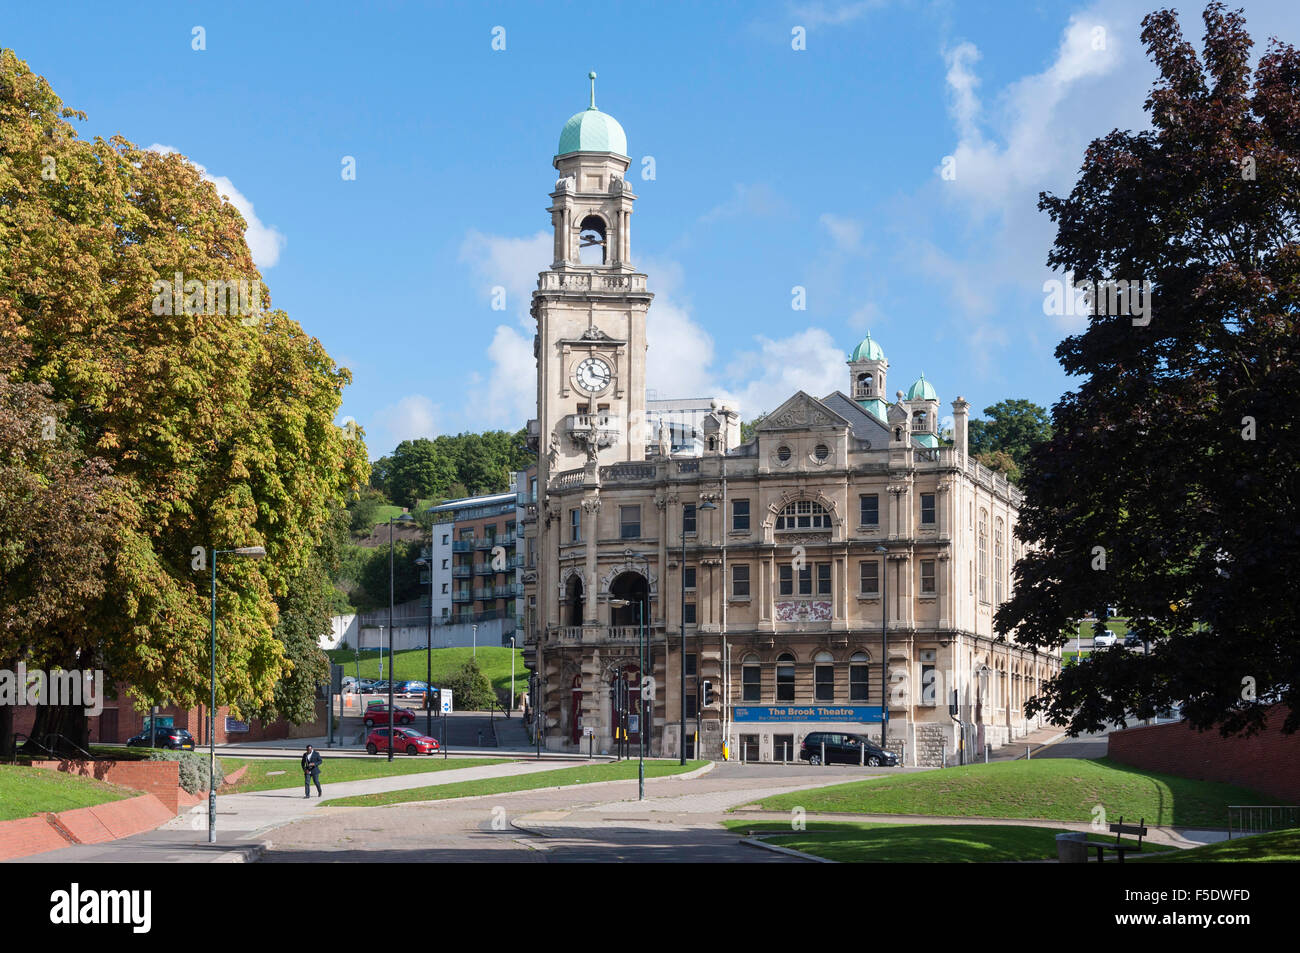 Rathaus-Uhr und Brook Theatre, das Bächlein, Chatham, Kent, England, Vereinigtes Königreich Stockfoto